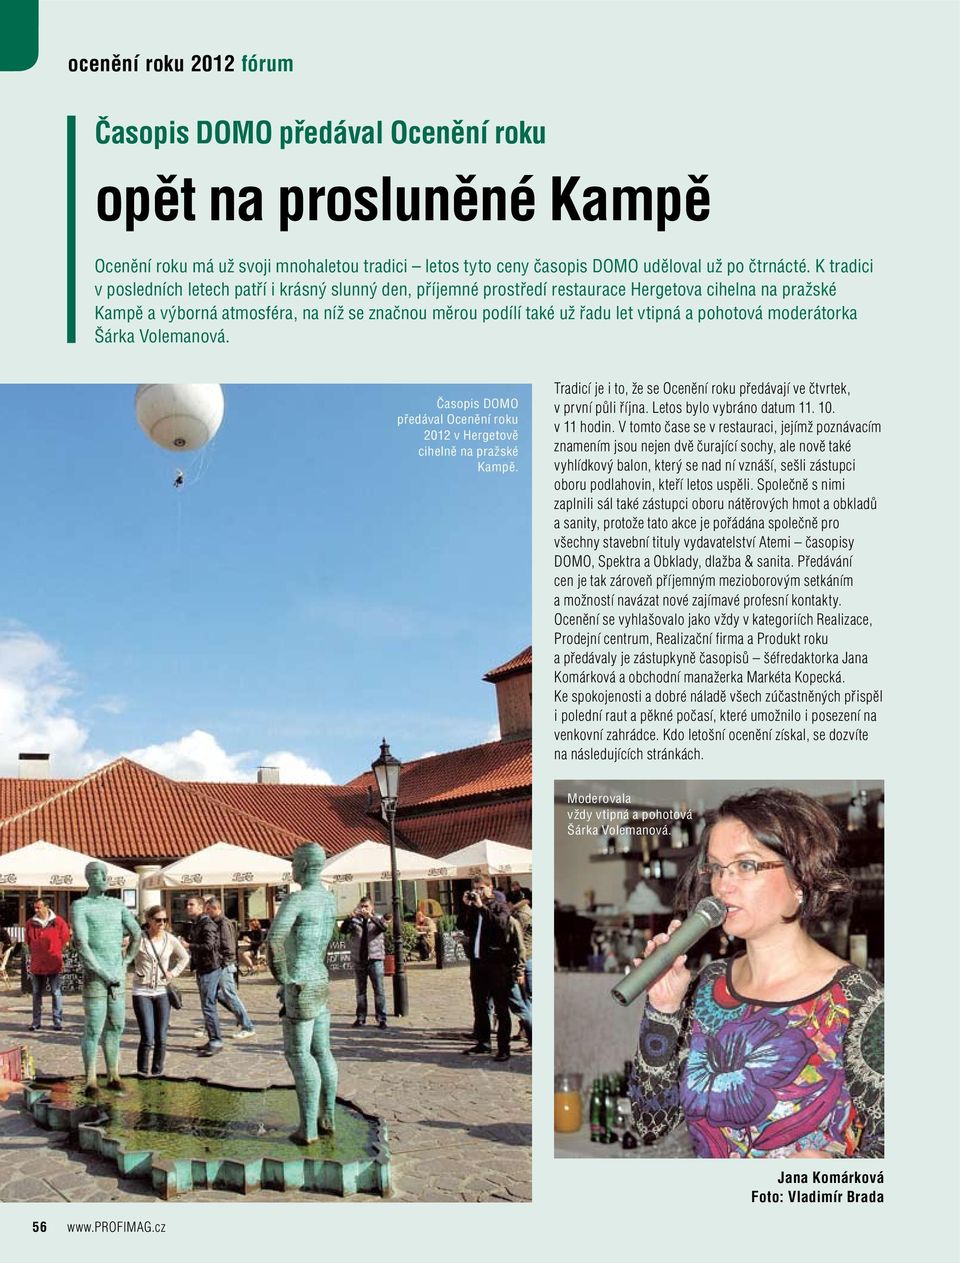 pohotová moderátorka Šárka Volemanová. Časopis DOMO předával Ocenění roku 2012 v Hergetově cihelně na pražské Kampě. Tradicí je i to, že se Ocenění roku předávají ve čtvrtek, v první půli října.